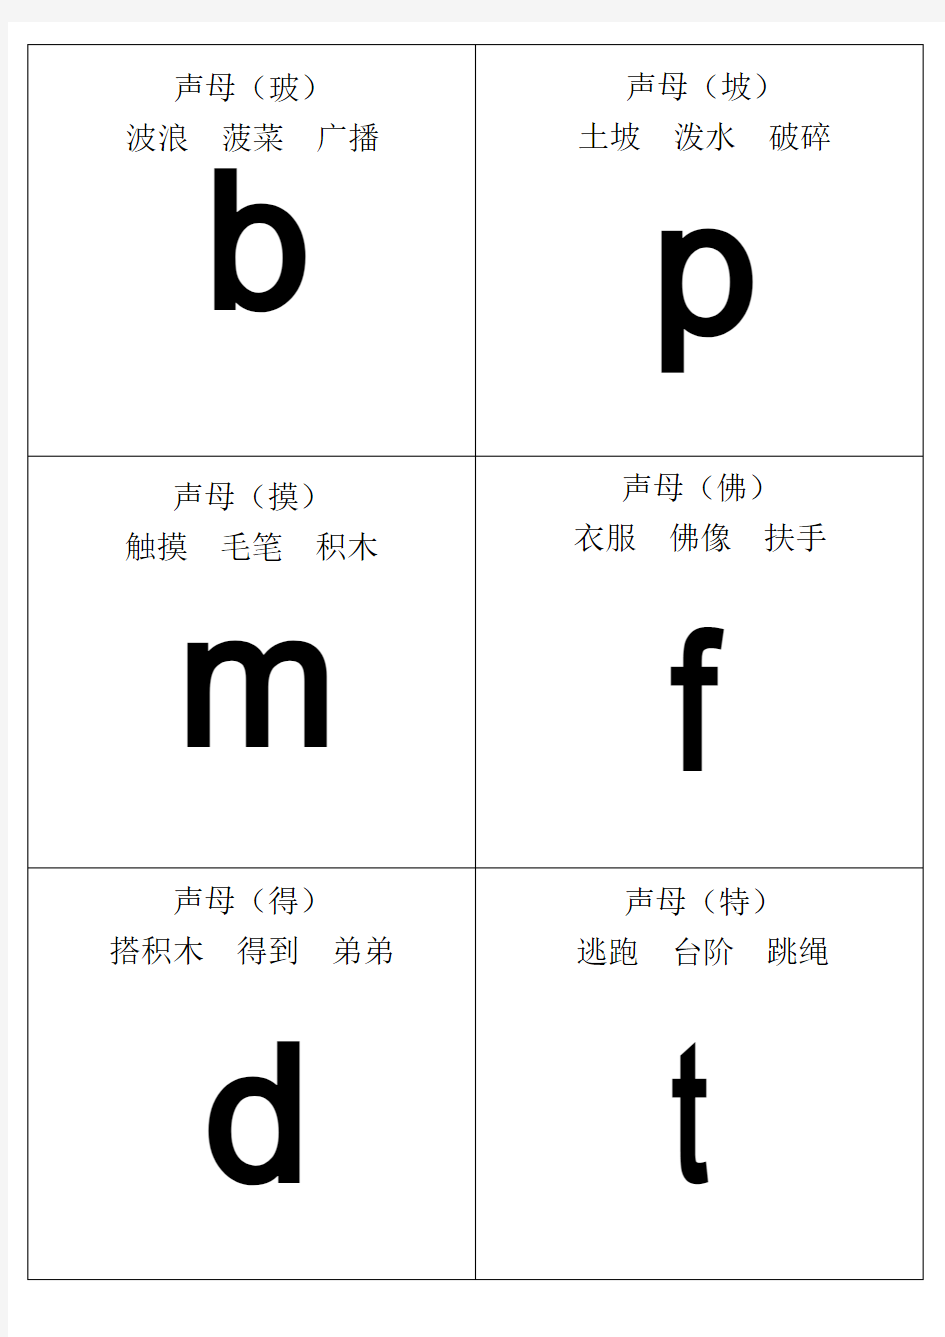 自己整理汉语拼音字母表卡片-读音(A4直接打印)资料讲解